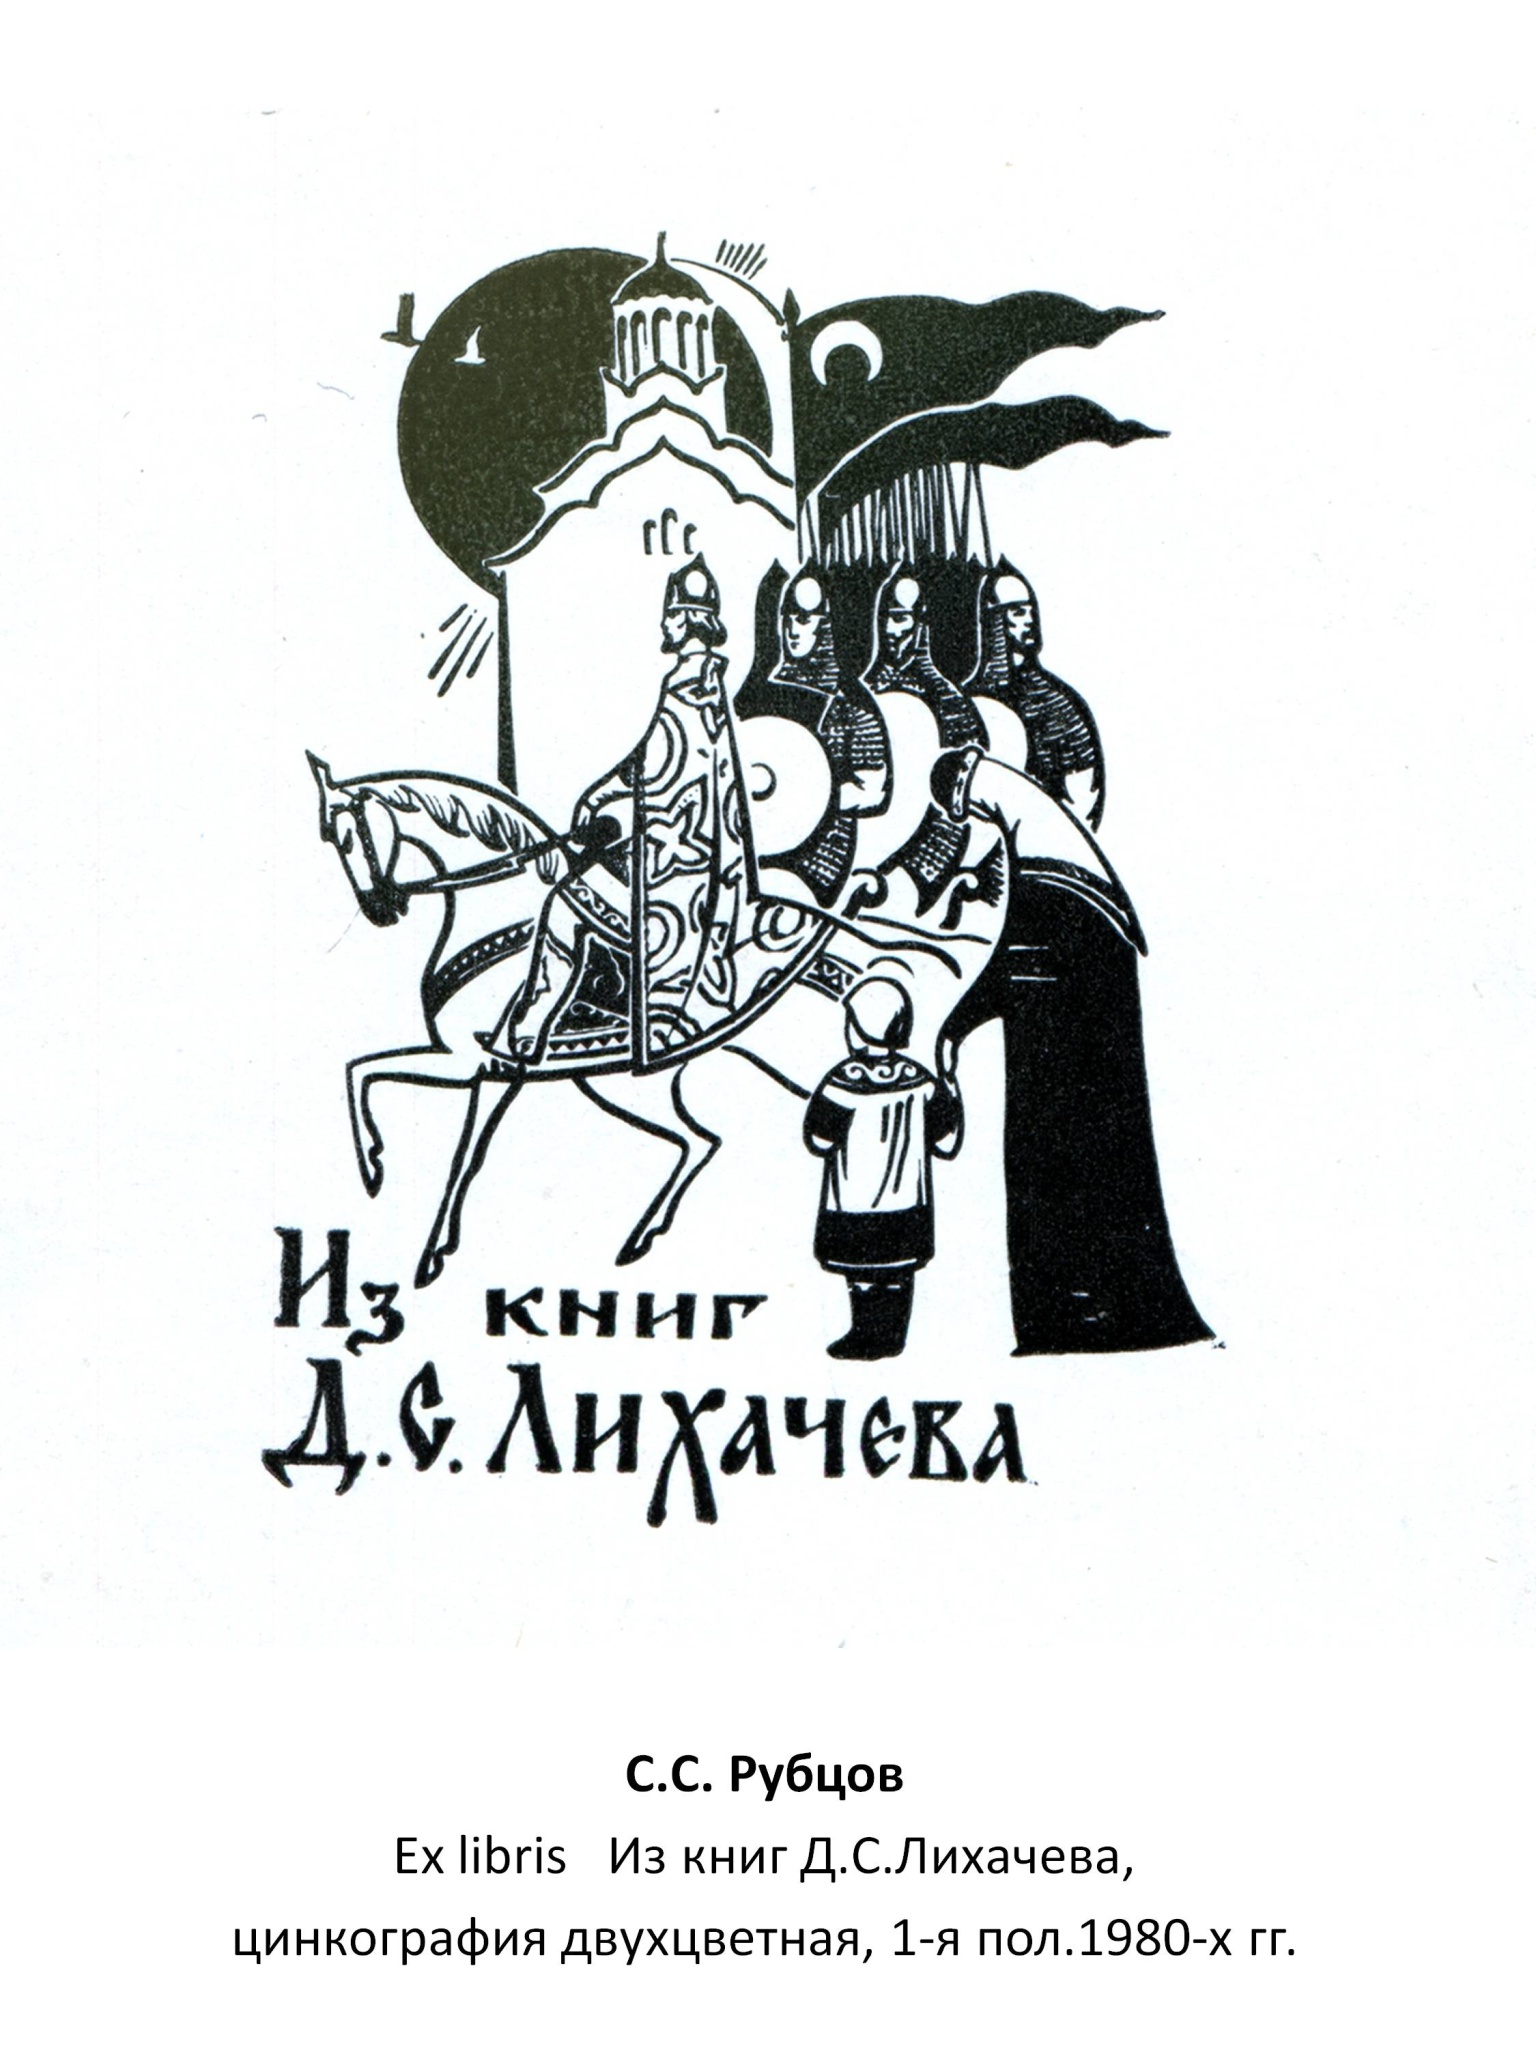 С. С. Рубцов Ex libris Из книг Д. С. Лихачева, цинкография двухцвеная, 1-я пол. 1980-х гг